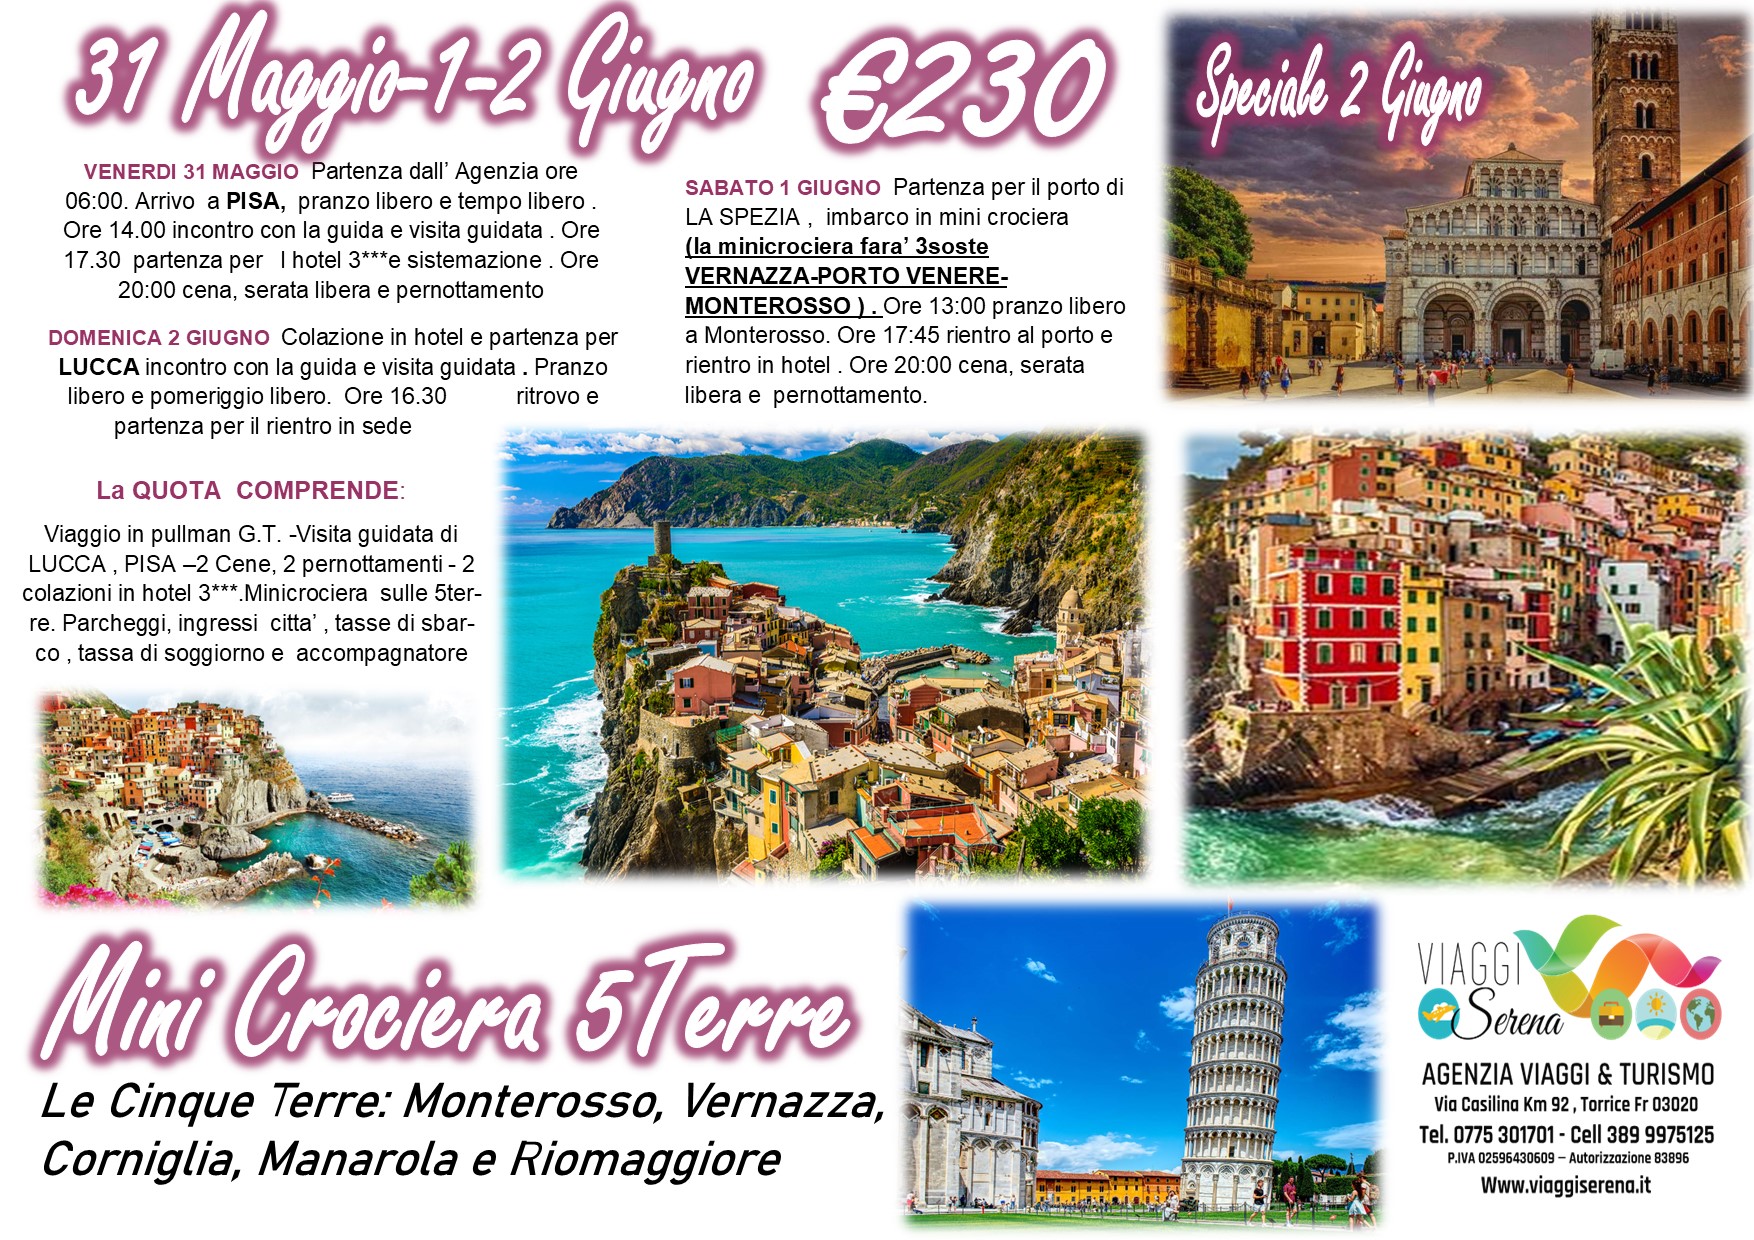 Viaggi di gruppo: Mini Crociera Cinque Terre, Pisa & Lucca 31 Maggio-1-2 Giugno € 230,00